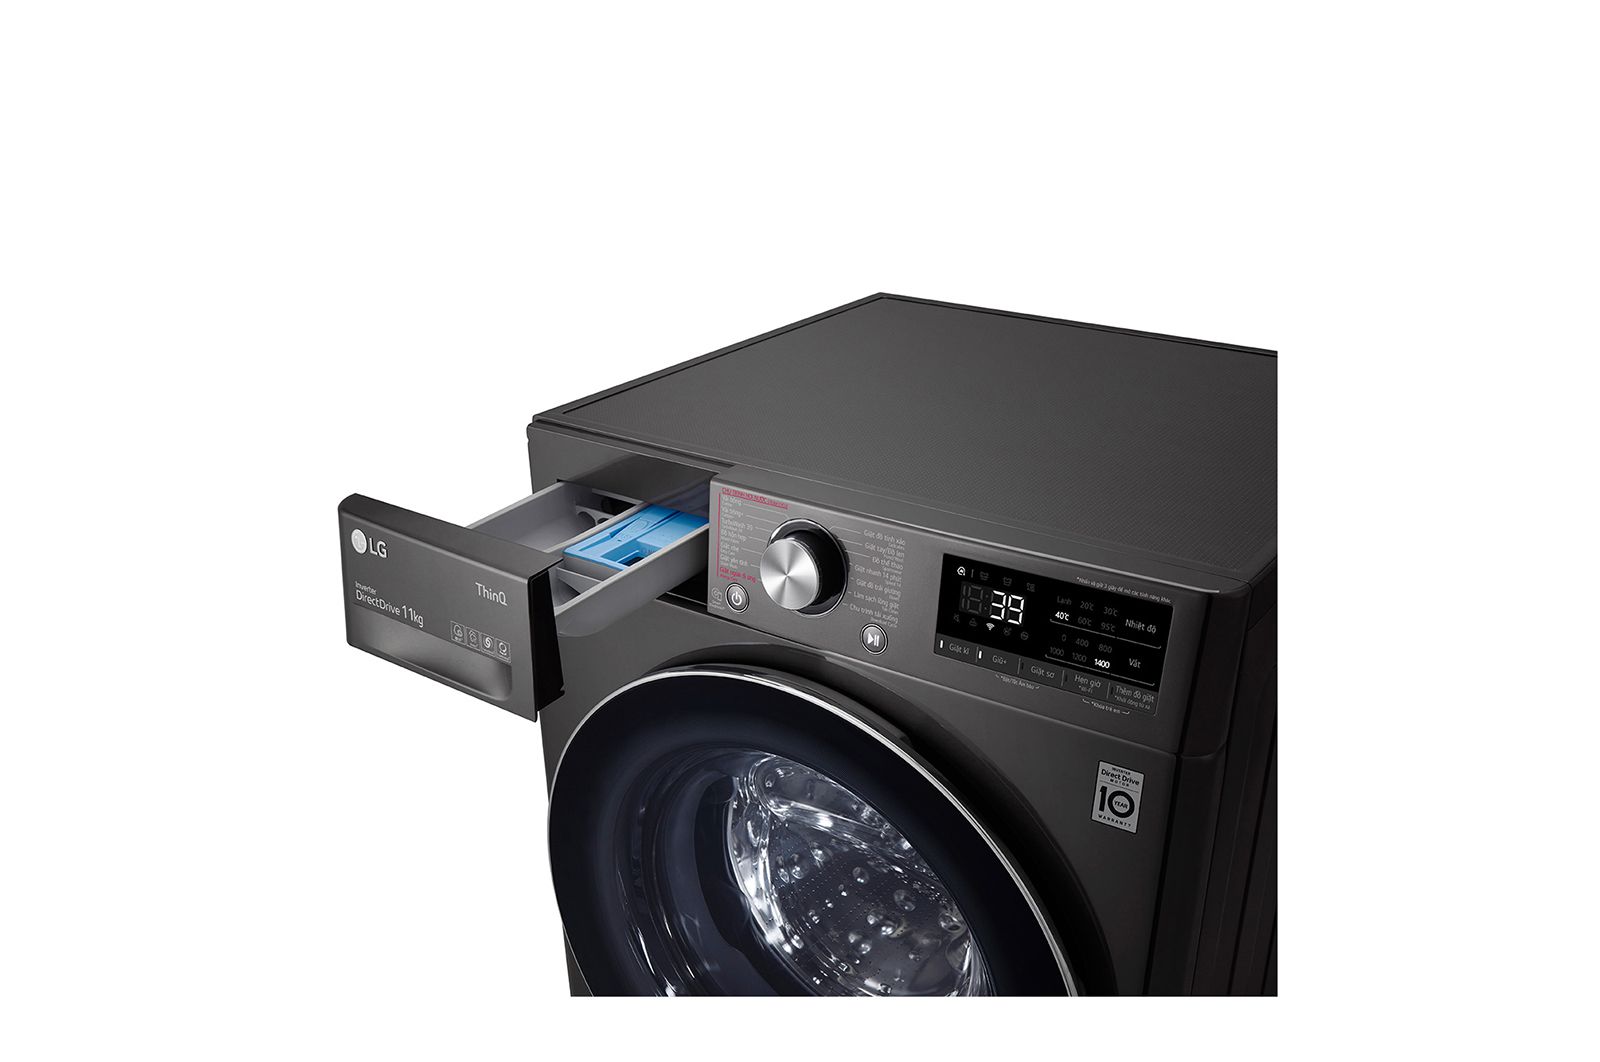 Với công nghệ mới AI DD™, LG máy giặt lồng ngang sẽ giúp bạn tiết kiệm thời gian và năng lượng khi giặt đồ. Hãy xem hình ảnh để trải nghiệm ngay những ưu điểm của sản phẩm này.